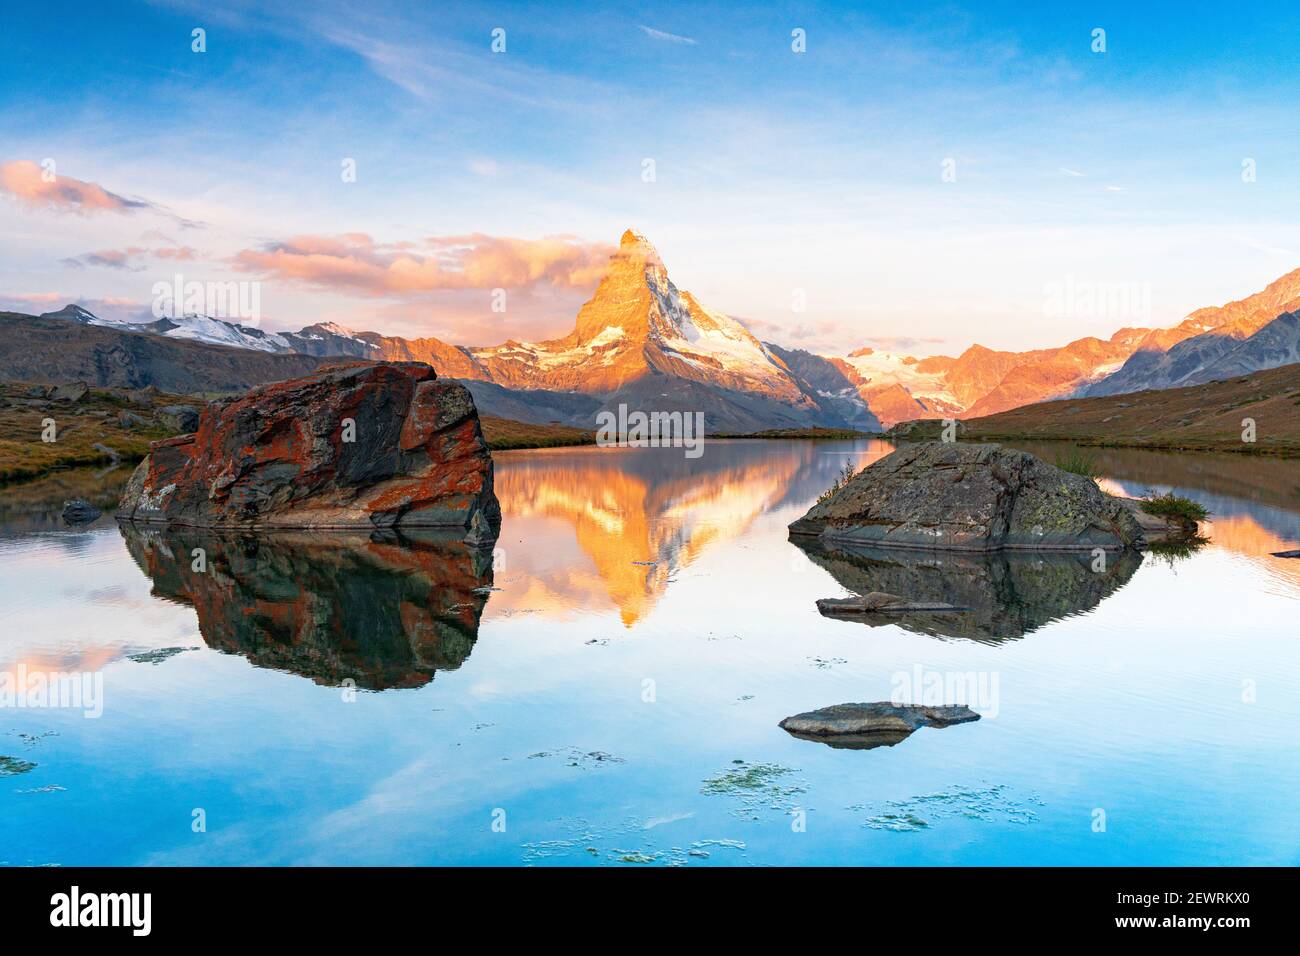 Cervin éclairé par le lever du soleil se reflète dans l'eau calme du lac Stellisee, Zermatt, canton du Valais, Suisse, Europe Banque D'Images